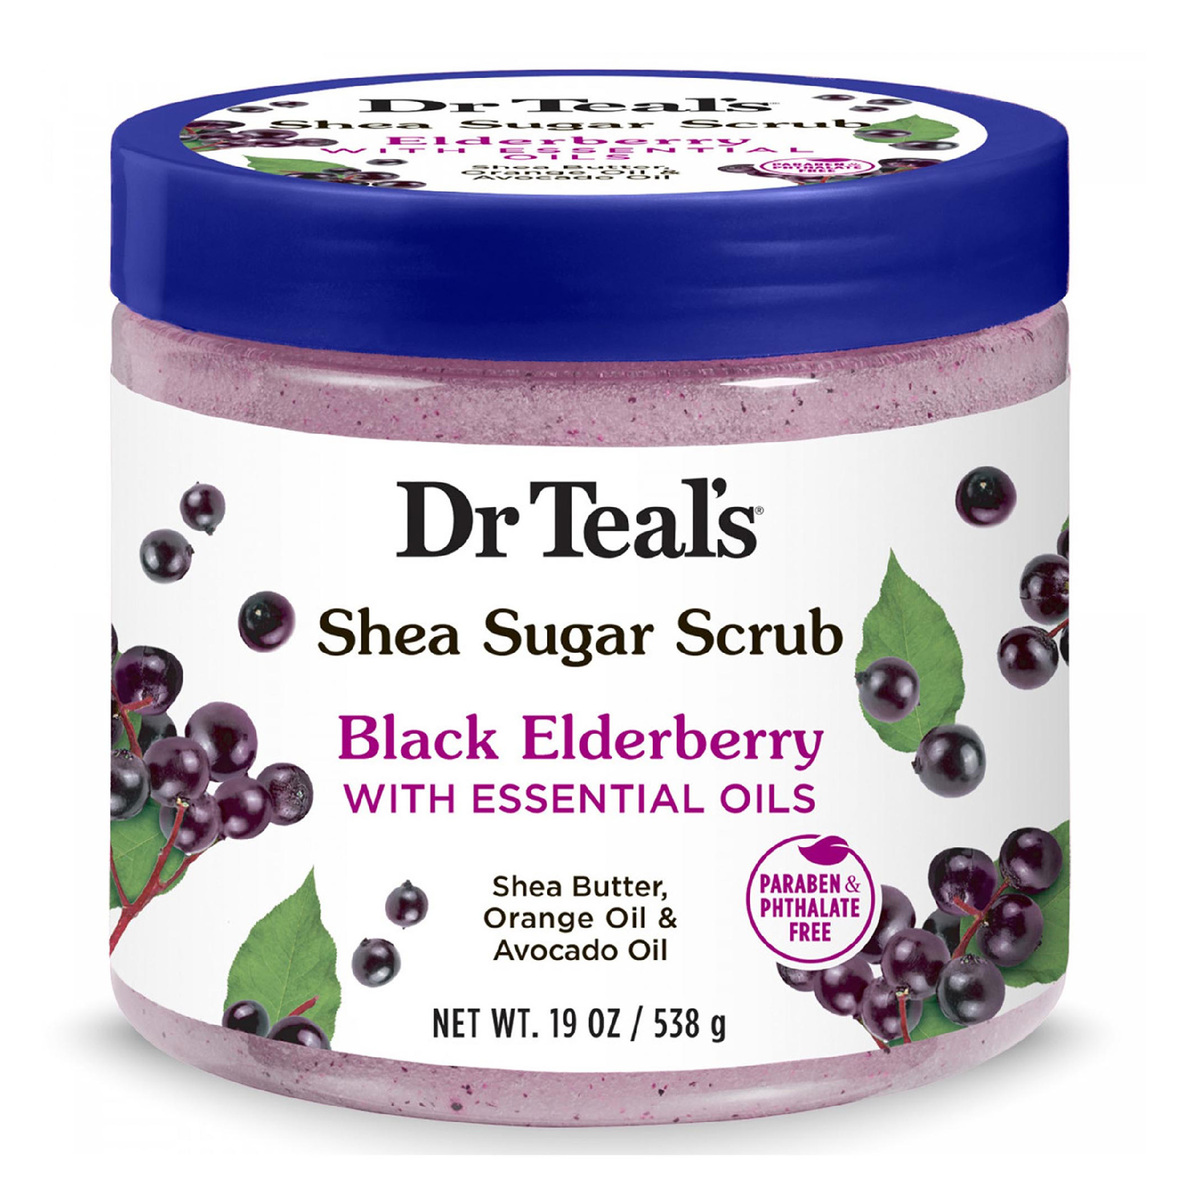 Dr Teal's Black Elderberry With Essential Oils Shea Sugar Scrub 538 g